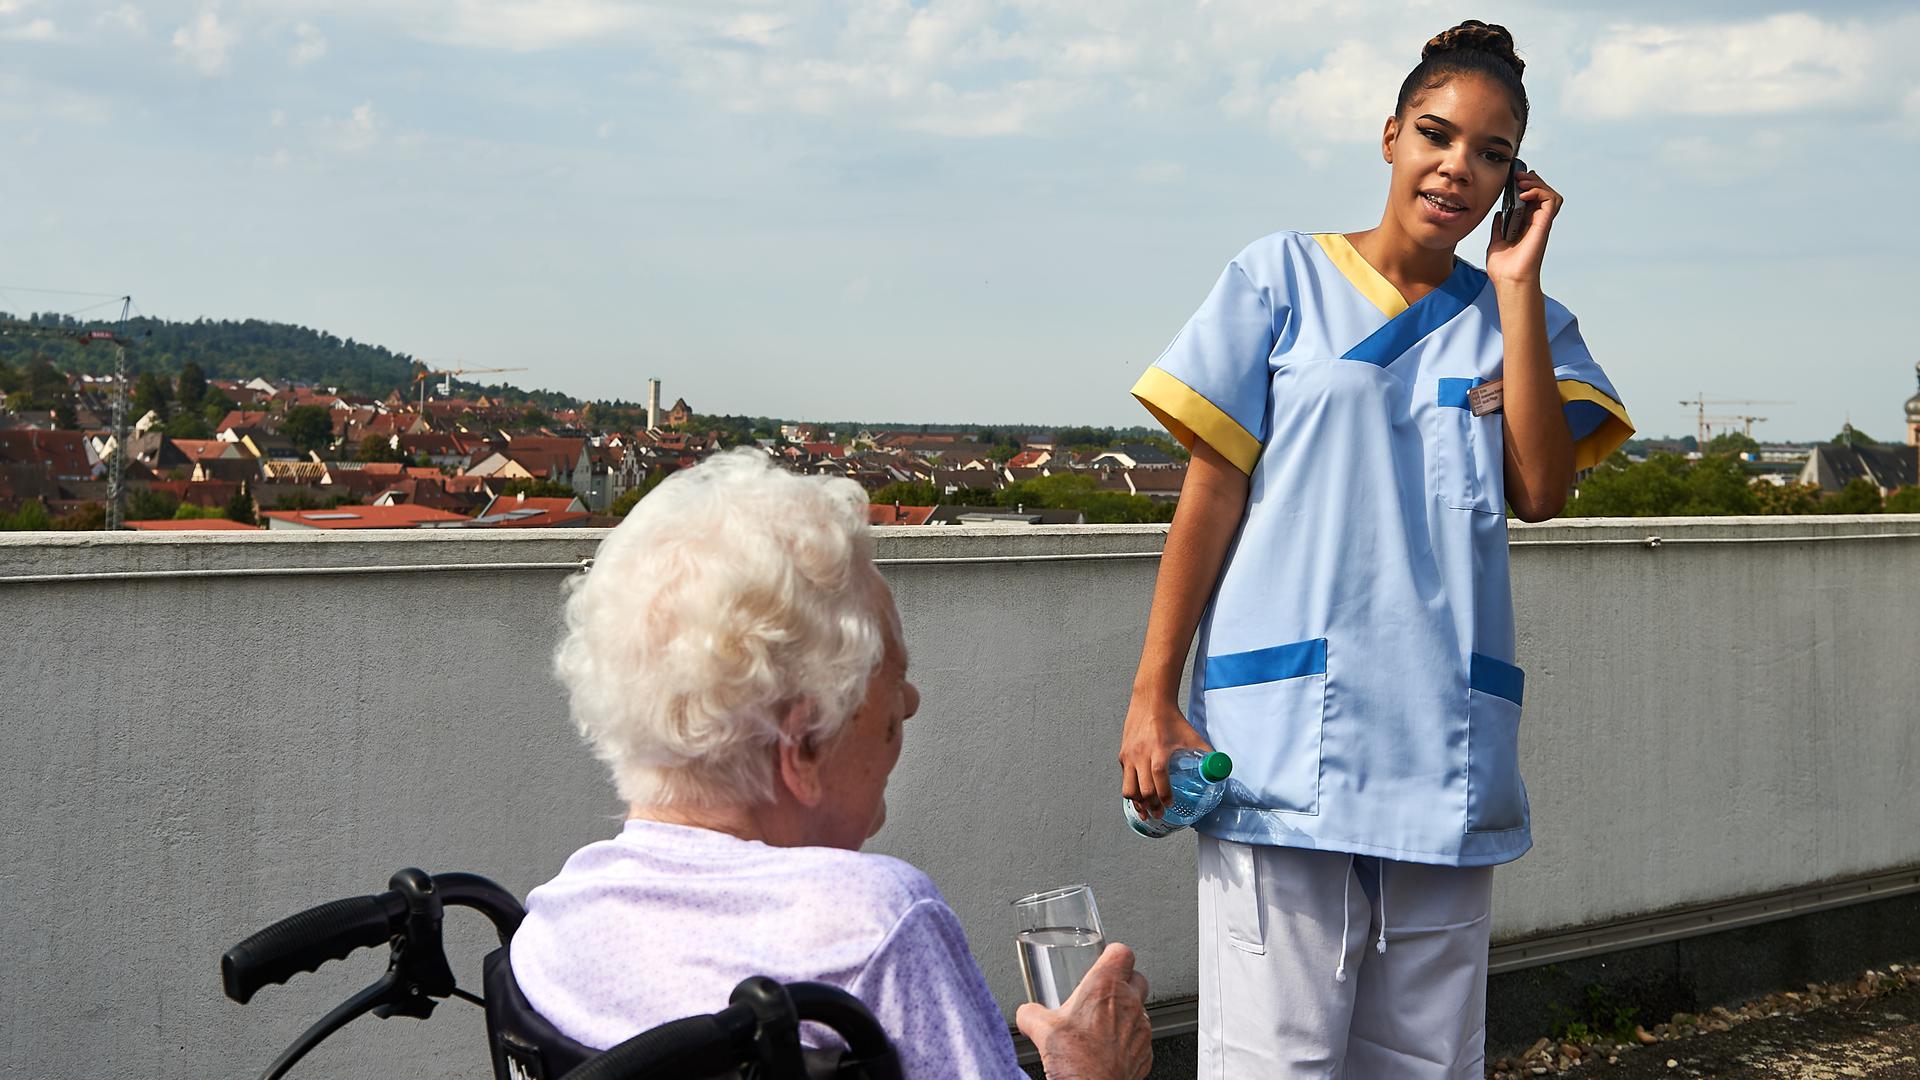 Schon voll im Einsatz: Anastassia Esholts wird zur Altenpflegehelferin im evangelischen Altenzentrum Bruchsal ausgebildet.